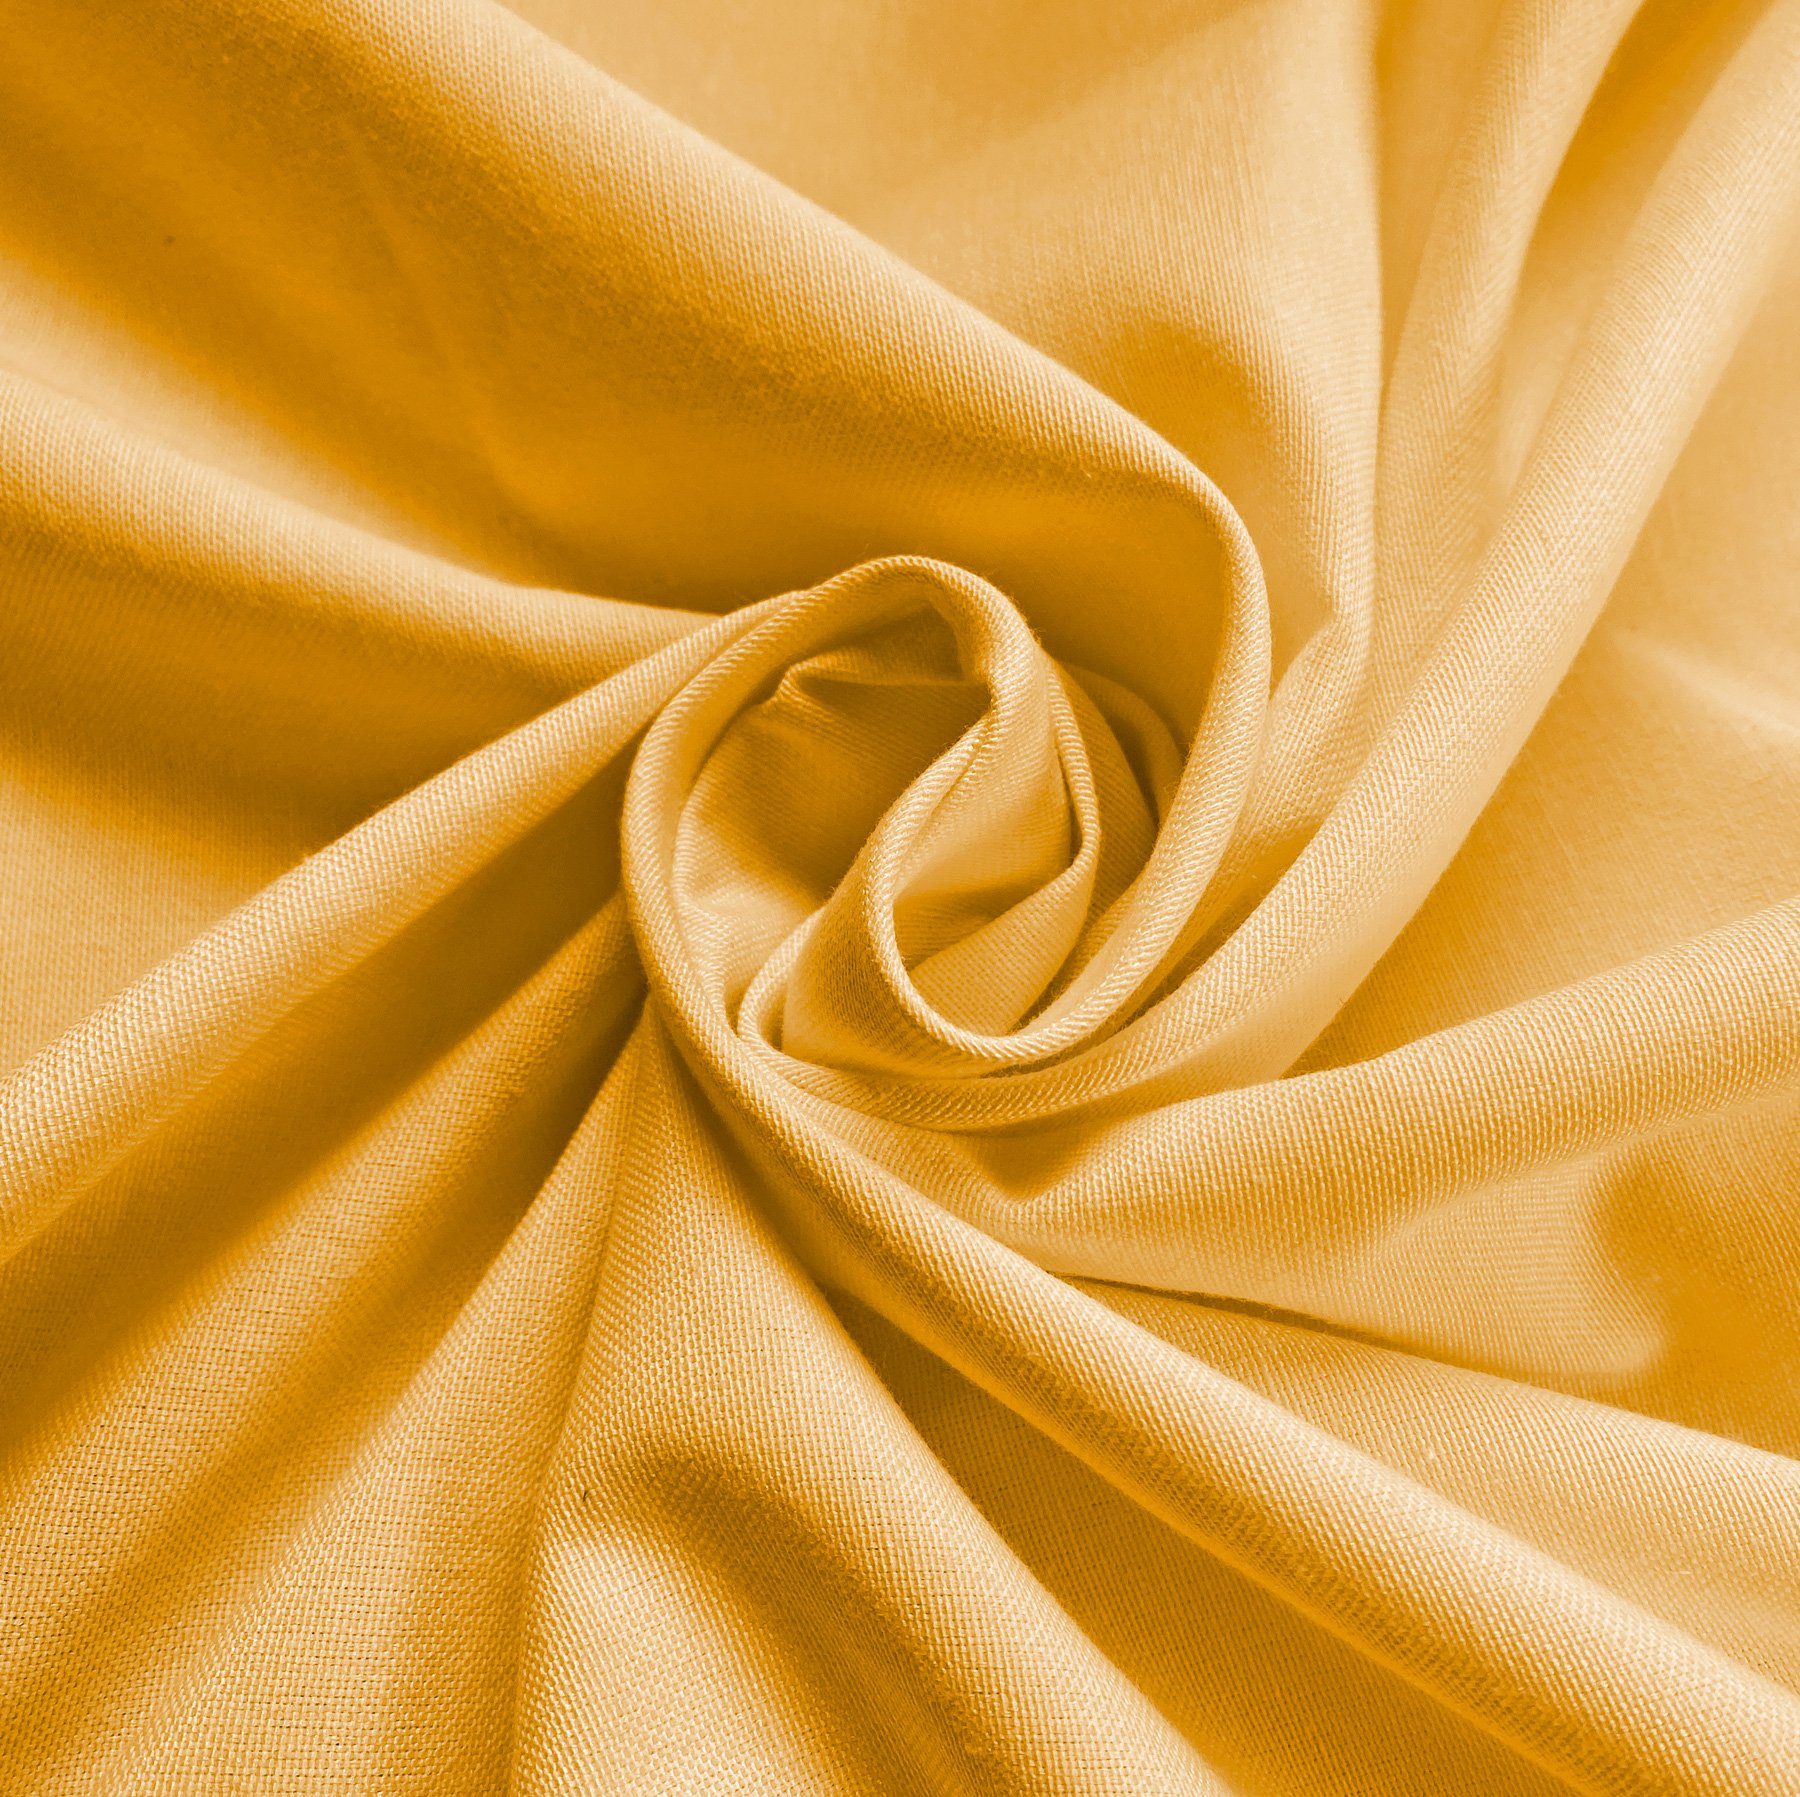 heimtexland Dekokissen Deko Kissenhülle Baumwolle Bezug Dekokissen, gelb Baumwoll-Qualität hochwertige Kissen